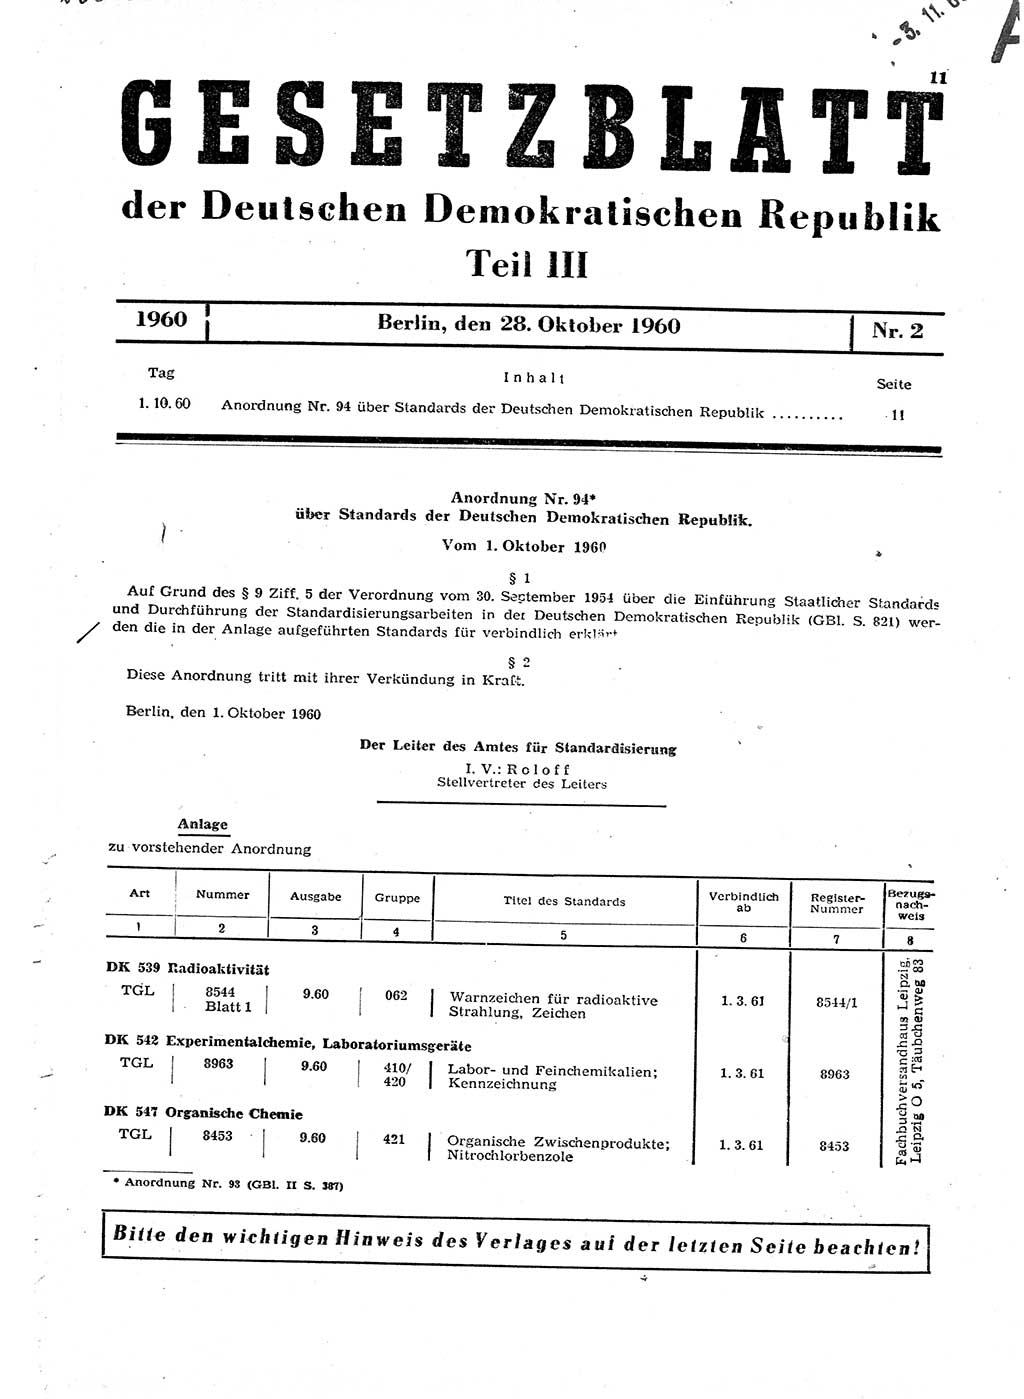 Gesetzblatt (GBl.) der Deutschen Demokratischen Republik (DDR) Teil ⅠⅠⅠ 1960, Seite 11 (GBl. DDR ⅠⅠⅠ 1960, S. 11)